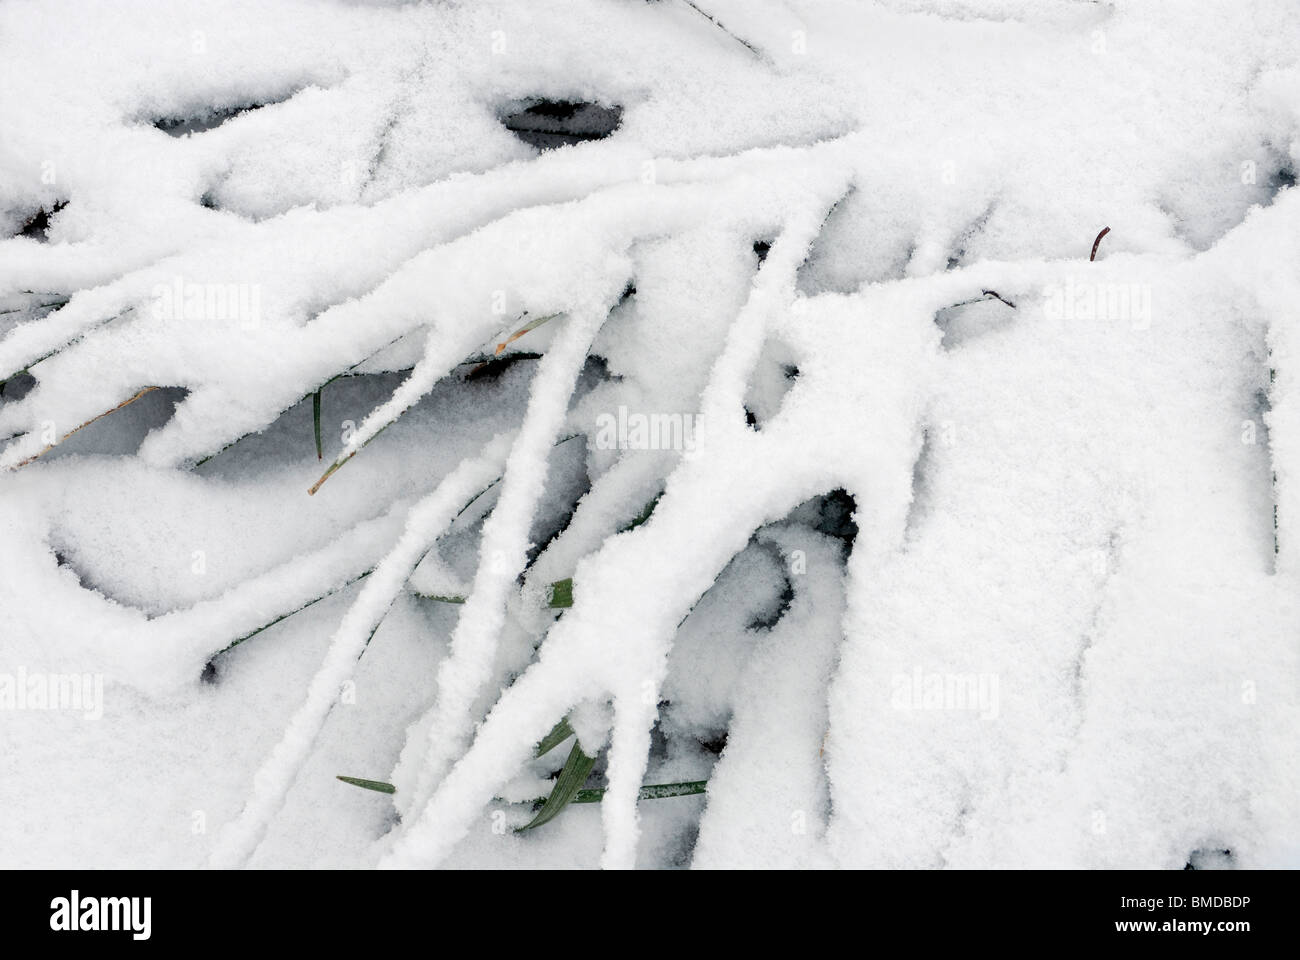 Monkey grass covered with fresh snow, Georgia, USA Stock Photo